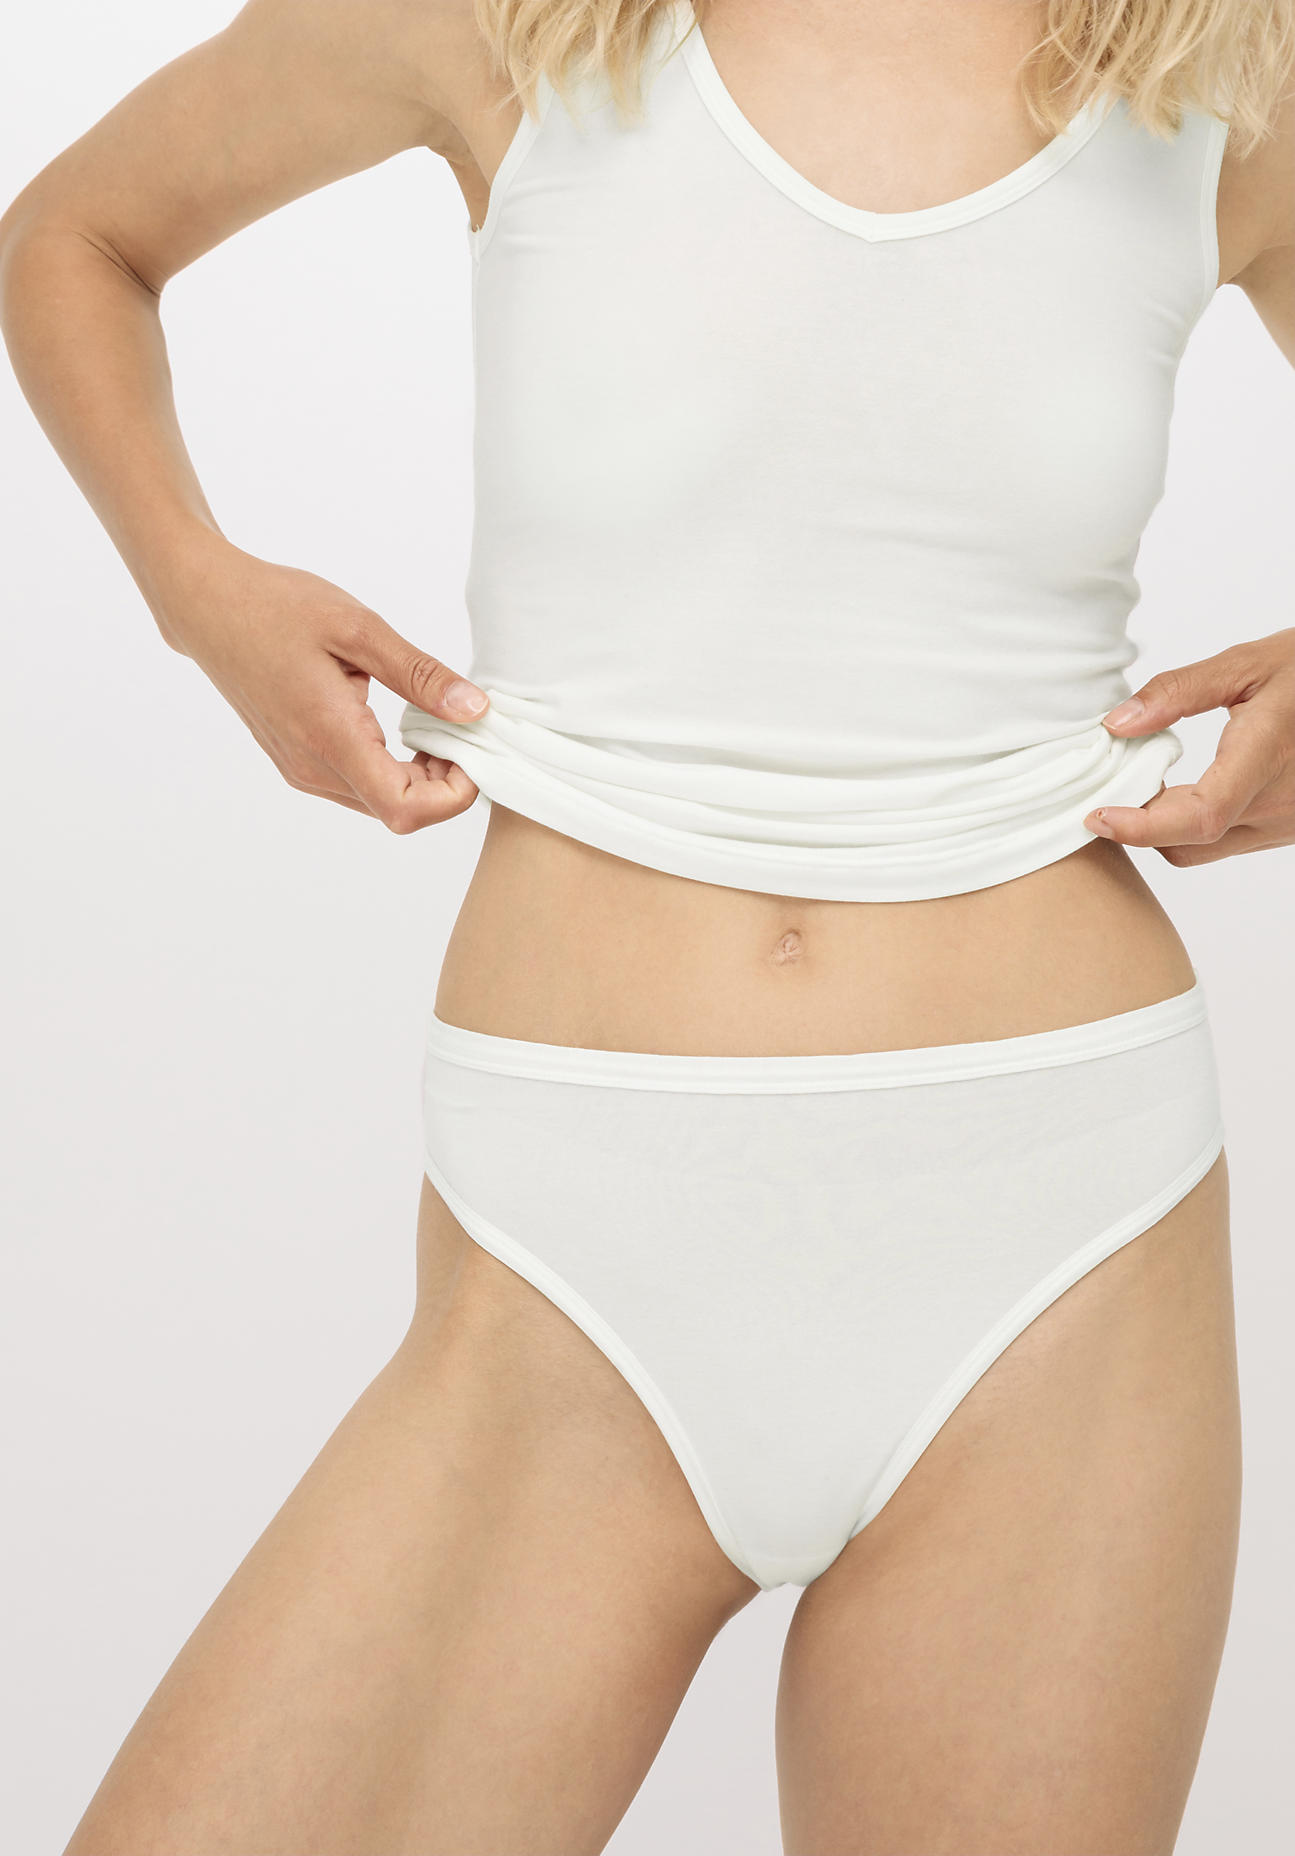 hessnatur Damen Slip high waist aus Bio-Baumwolle und Tencel™ Modal - weiß - Größe 42